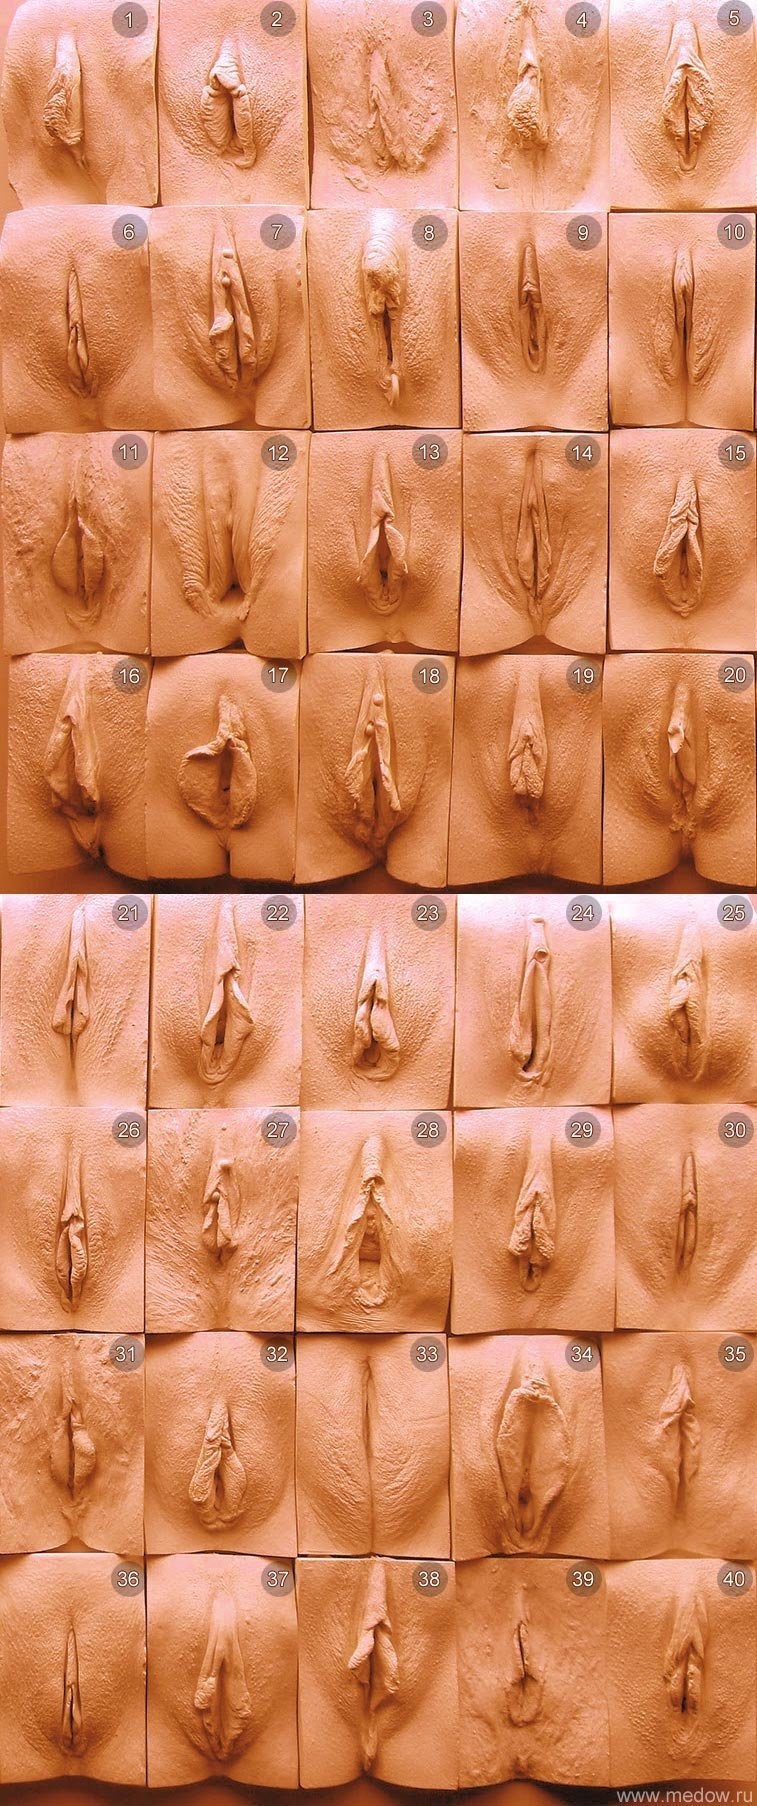 Разновидность вагин и пенисов